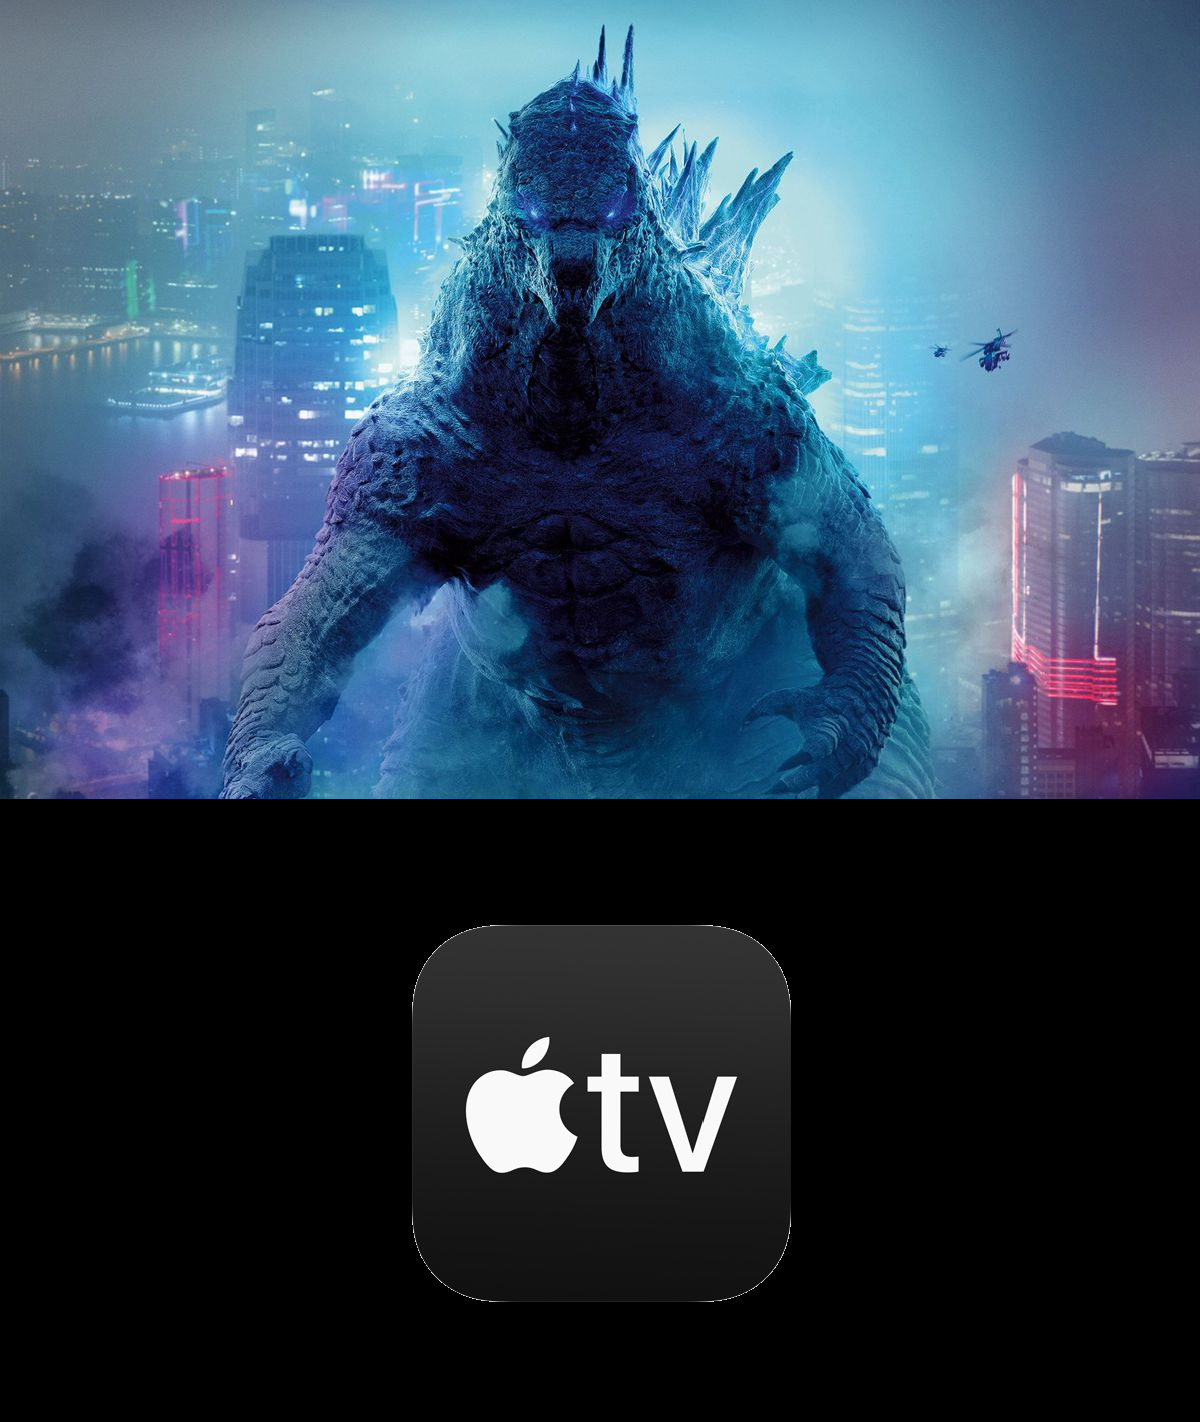 Clash of the Titans - Apple TV